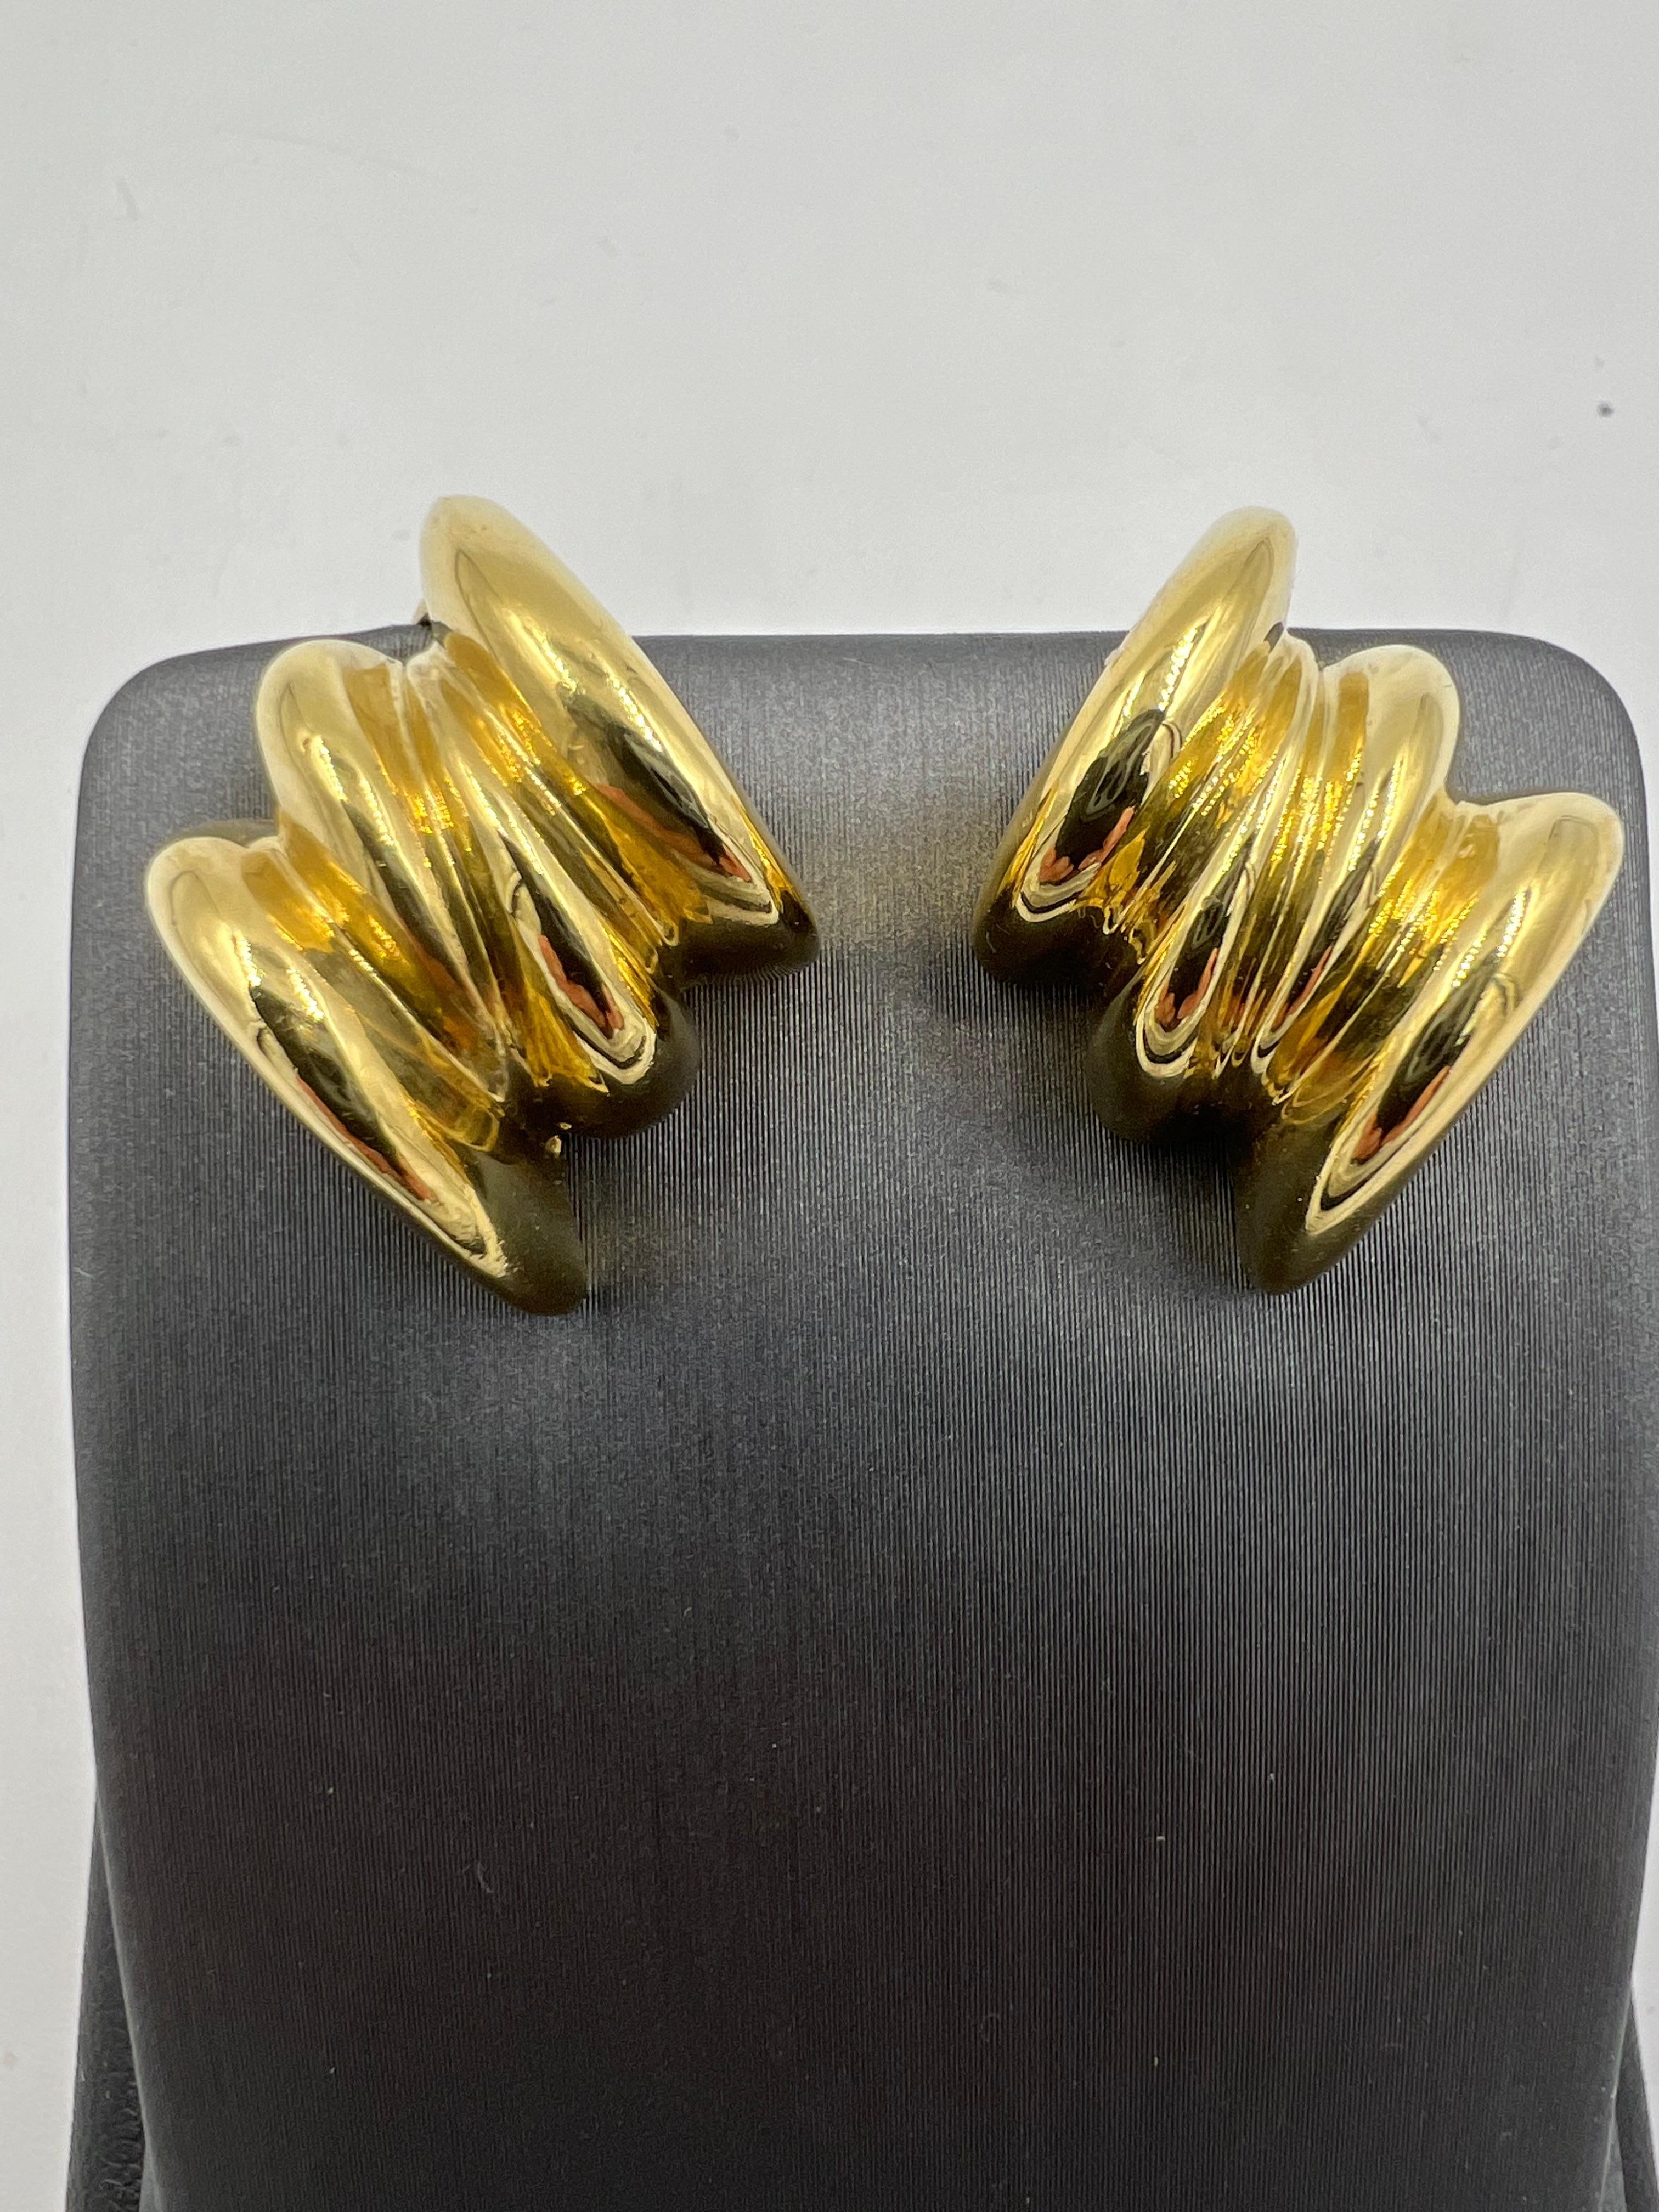 Tiffany-Ohrringe aus geripptem Gelbgold, ca. 1970er Jahre.

  In der glamourösen Ära der 1970er Jahre war die Mode kühn und extravagant. Ein ikonisches Stück, das den Stil verkörpert 
der damaligen Zeit waren die gerippten Tiffany-Ohrringe aus